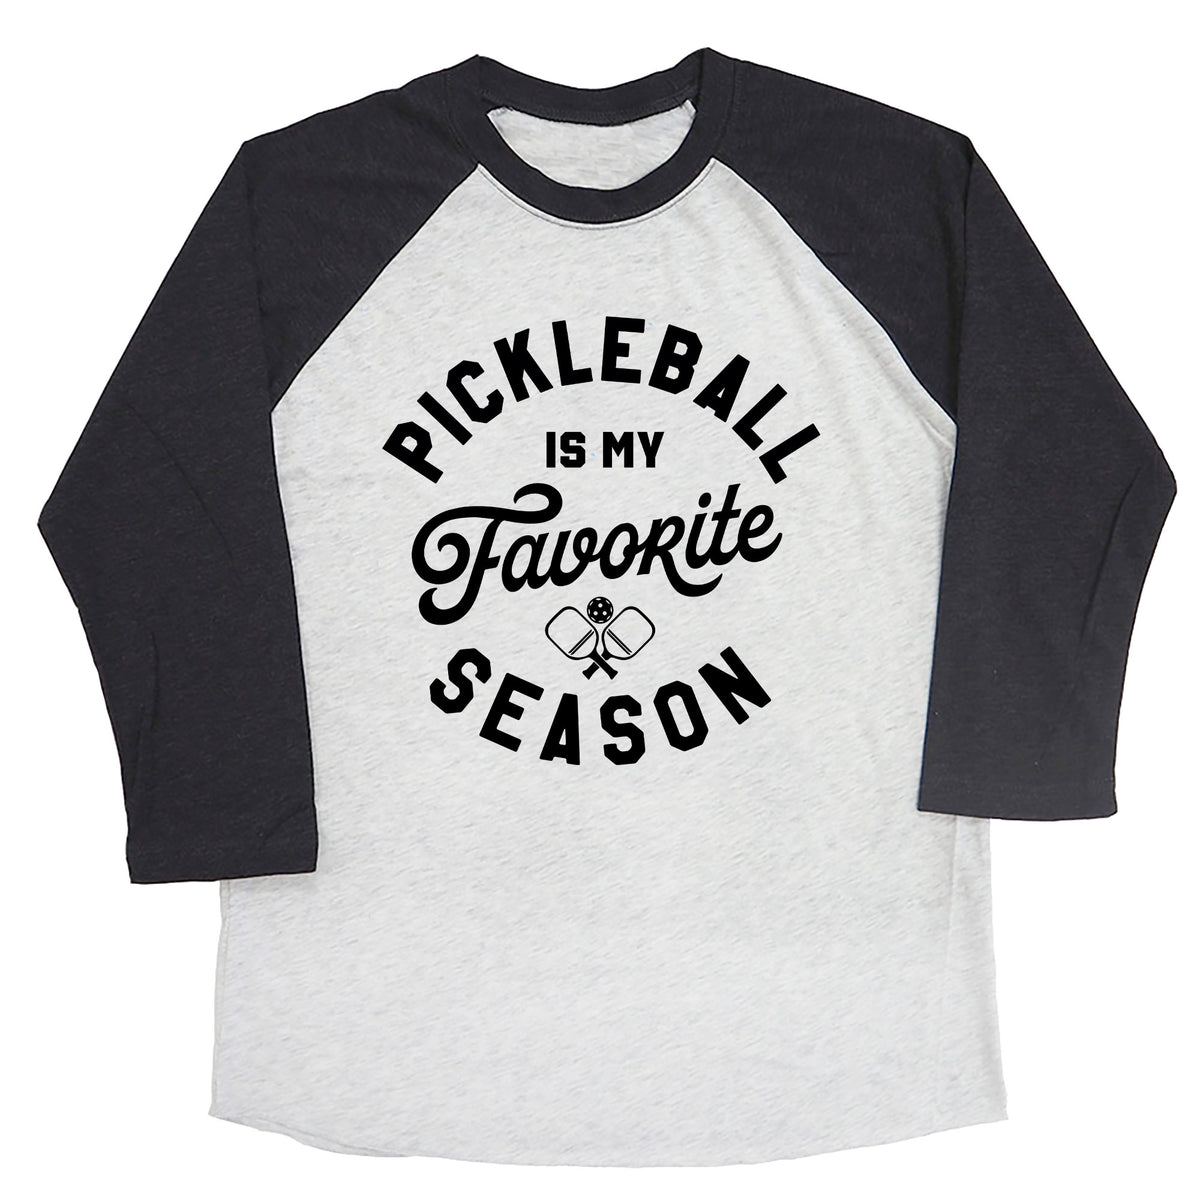 Pickleball is My Favorite Season Raglan